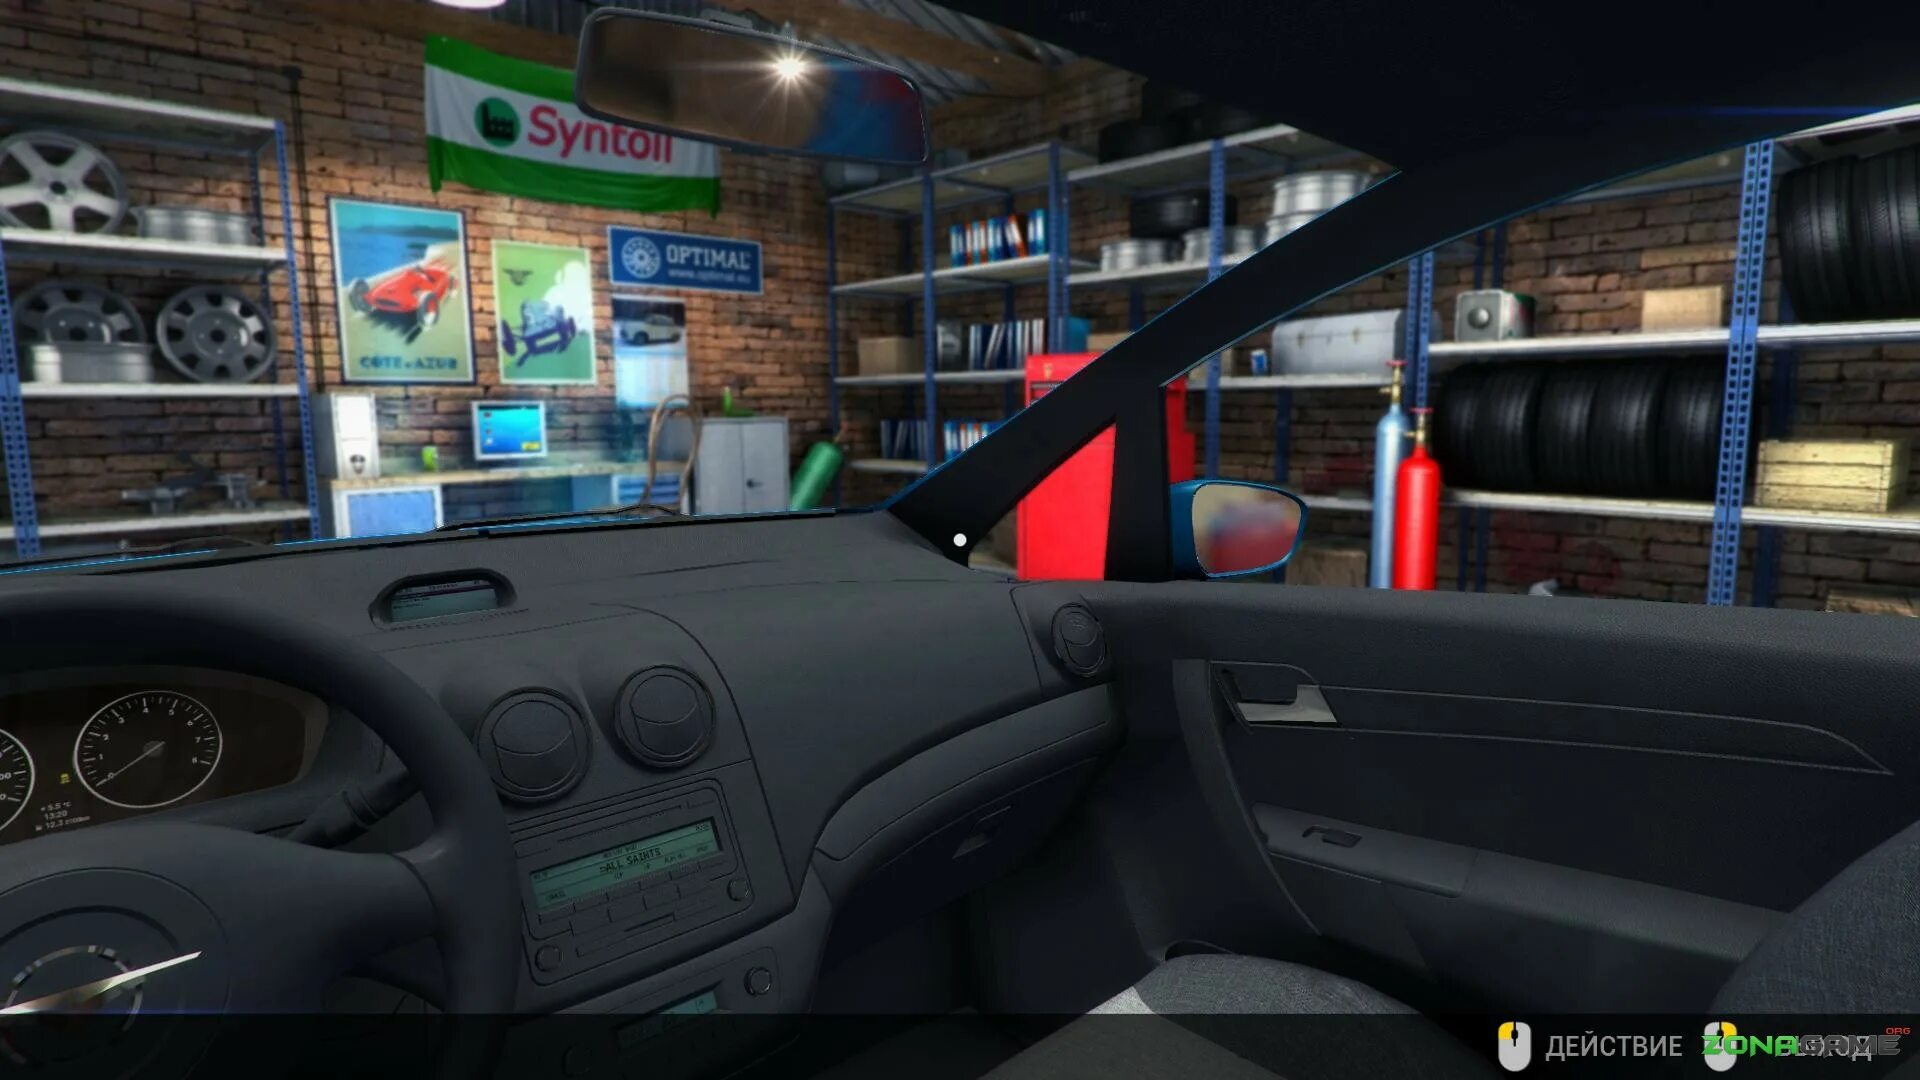 Игра car Mechanic Simulator 2014. Симулятор автомеханика 3д. Car Mechanic Simulator 2014 PC. Русские автосимуляторы на ПК.